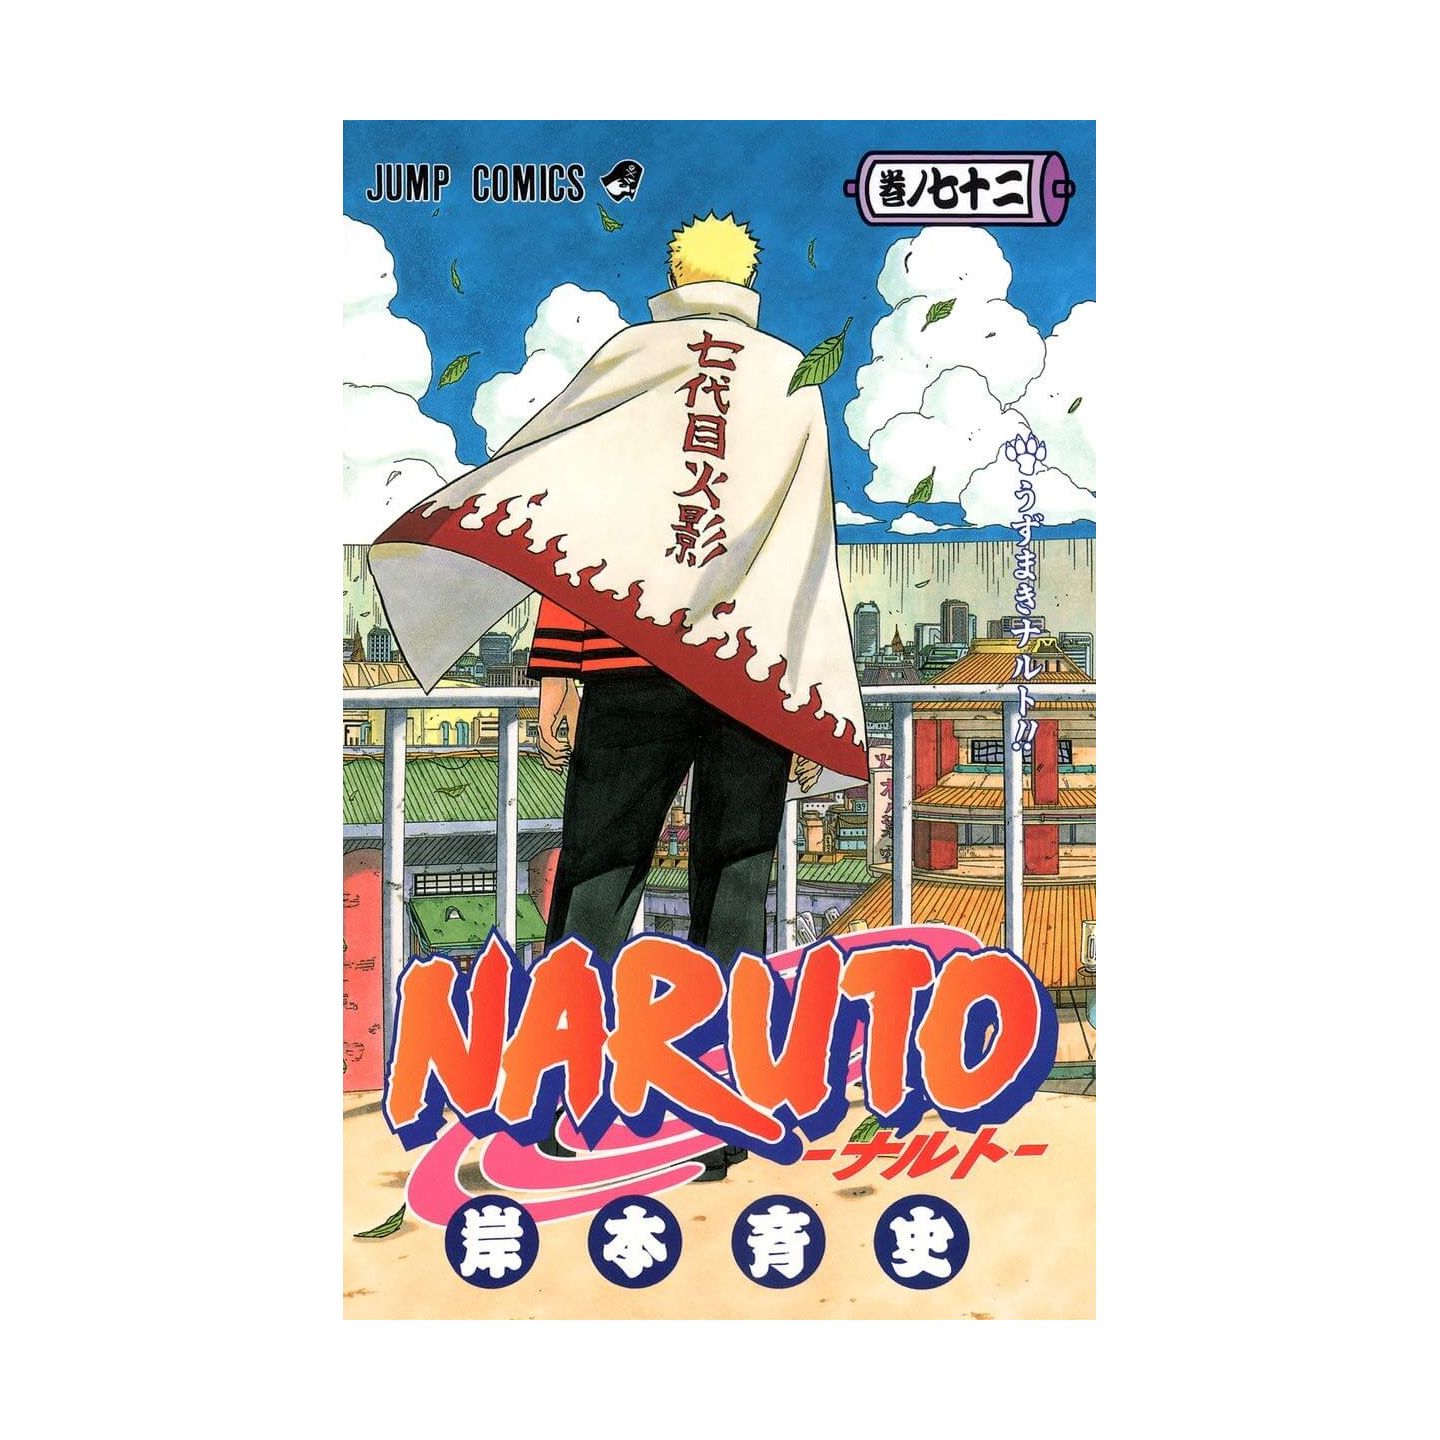 Naruto vol.72 - Jump Comics (japanese version)